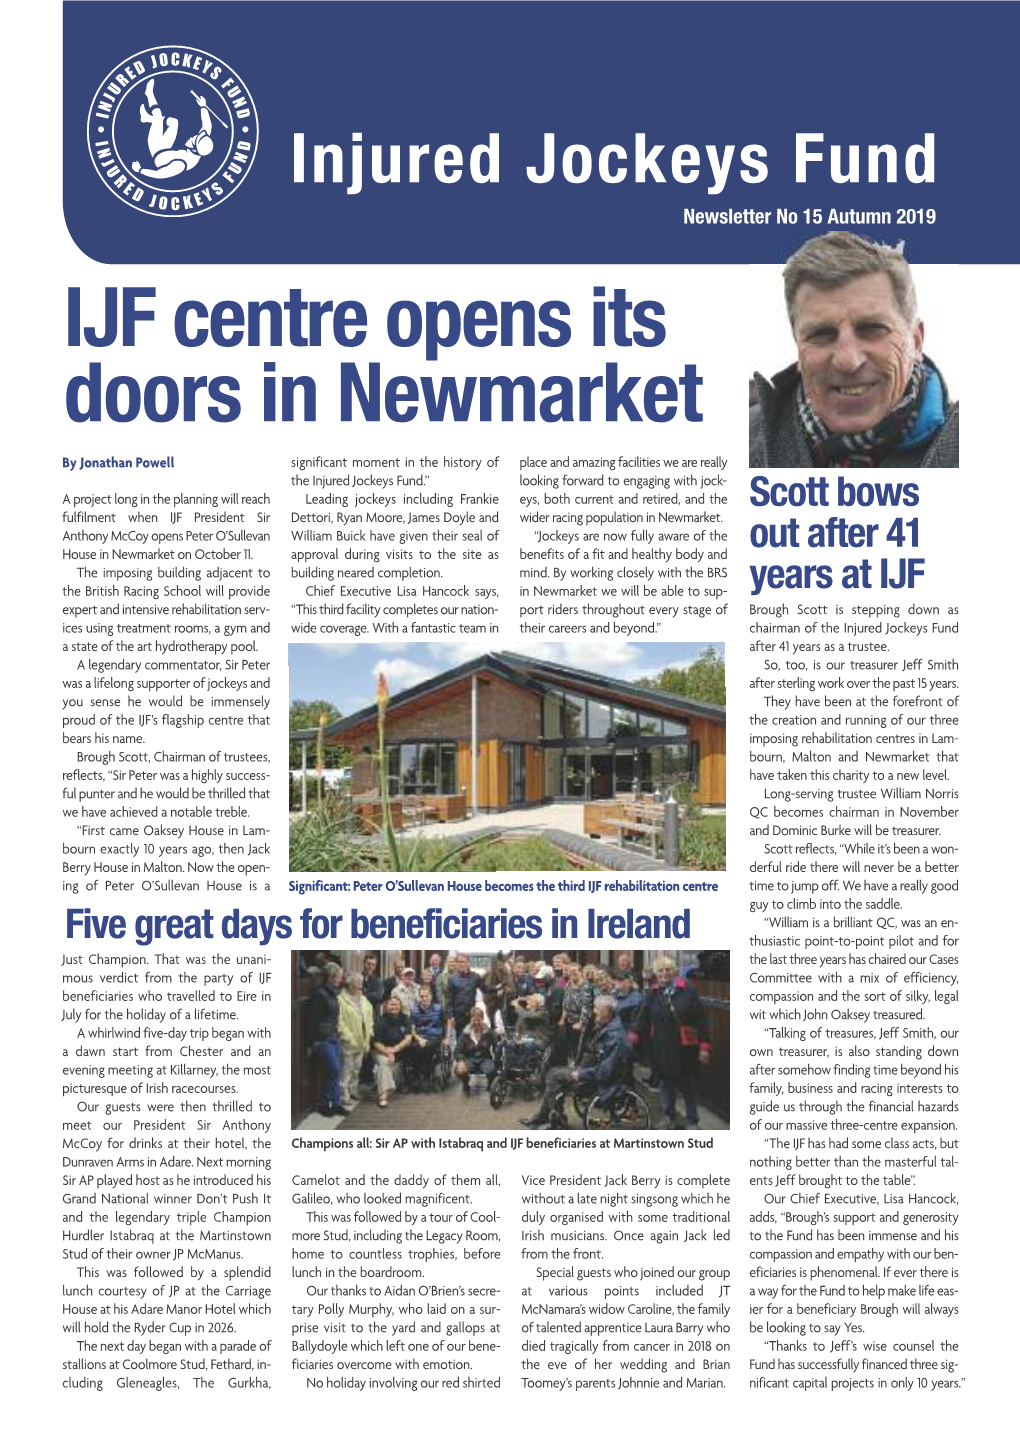 IJF Centre Opens Its Doors in Newmarket